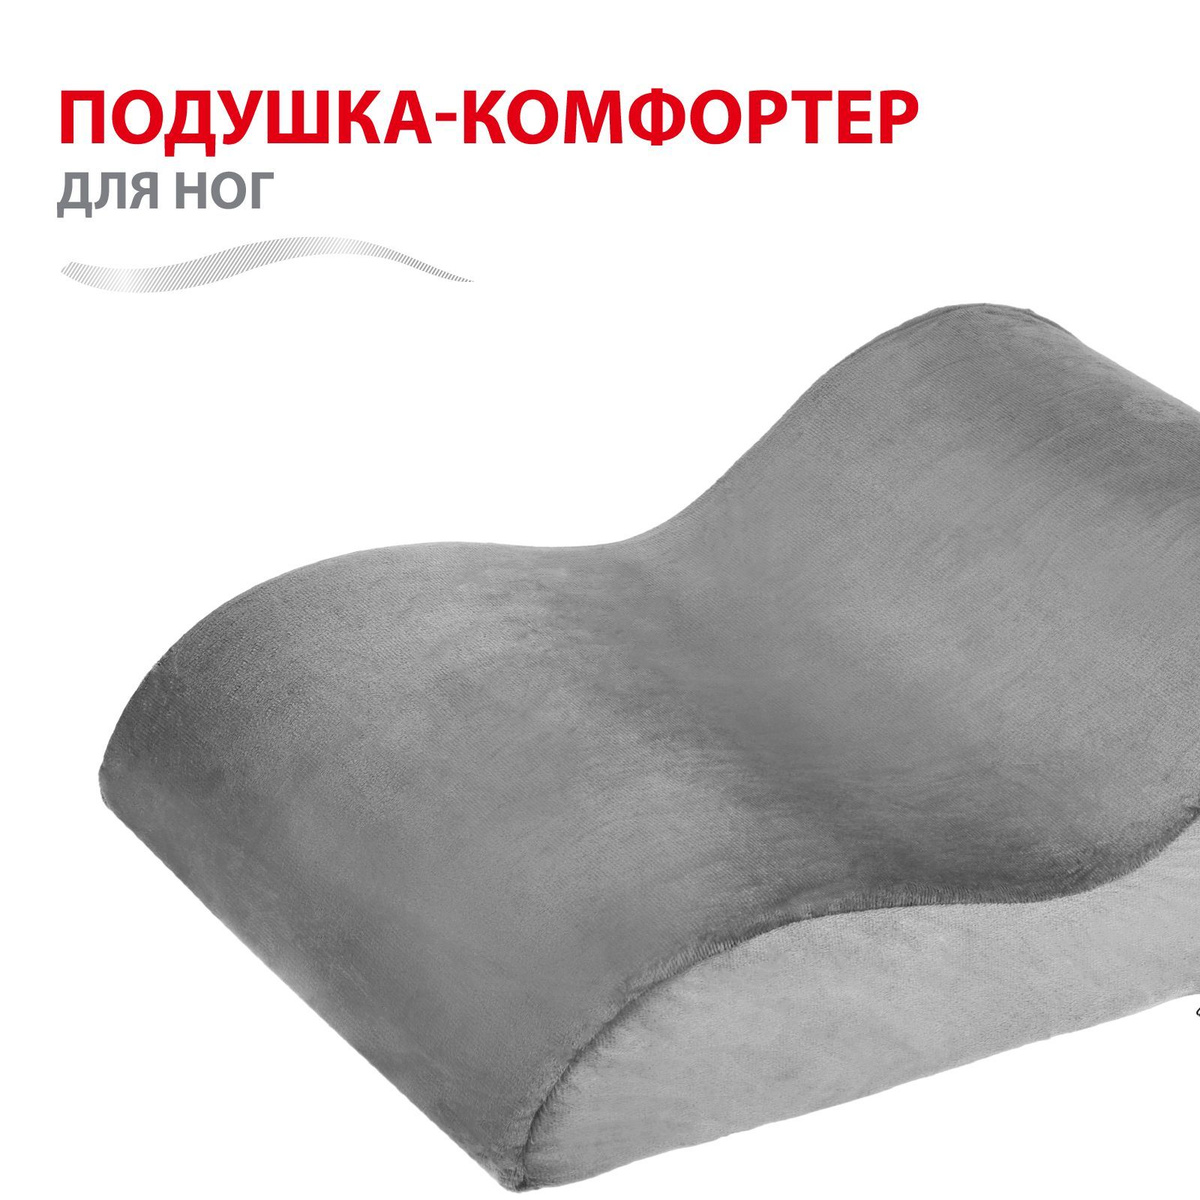 Подушка камфортер для ног